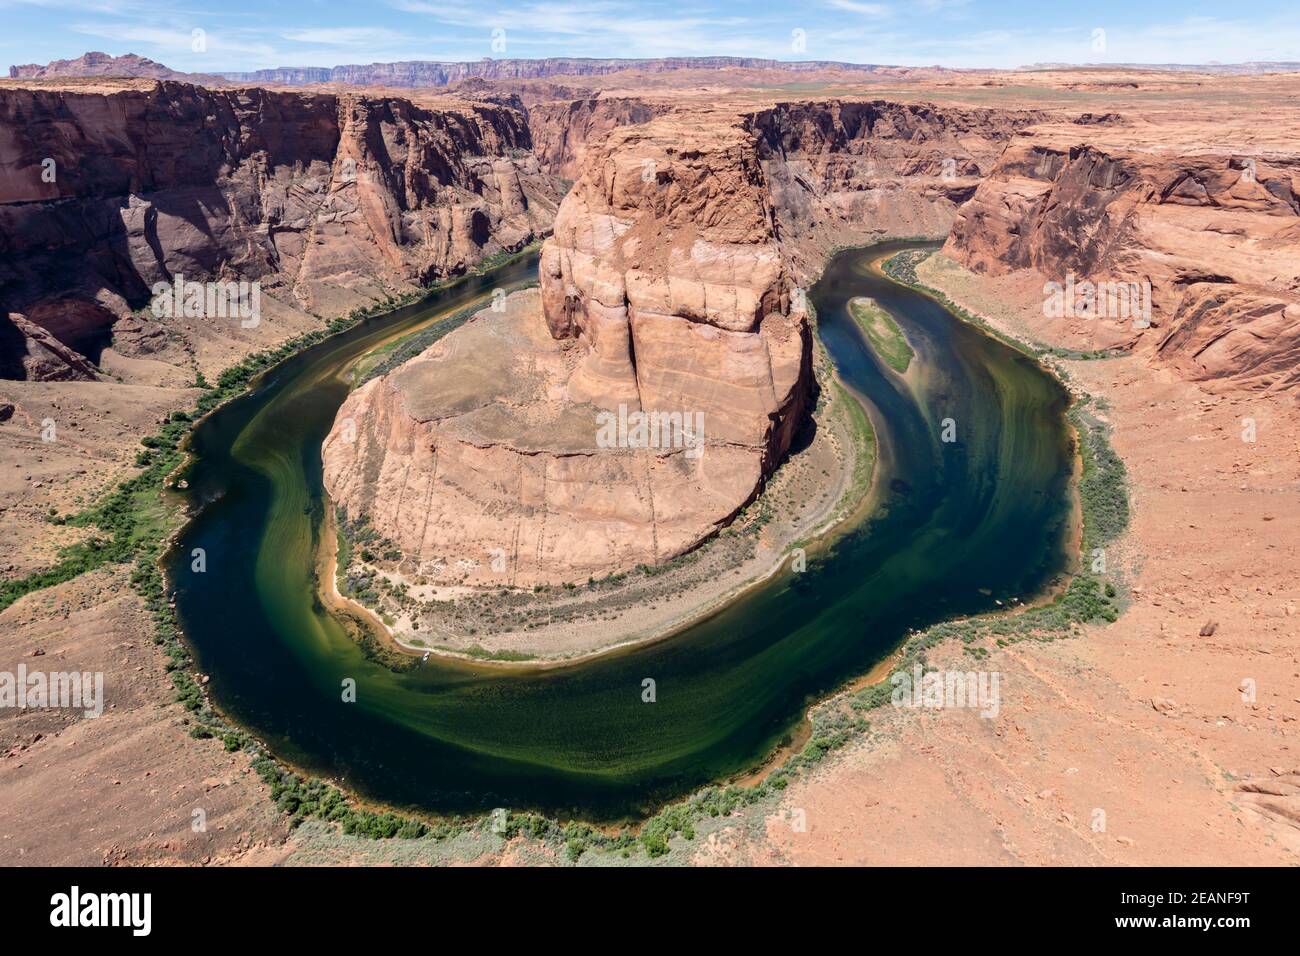 Horseshoe Bend sur le fleuve Colorado, Glen Canyon National Recreation Area, Arizona, États-Unis d'Amérique, Amérique du Nord Banque D'Images